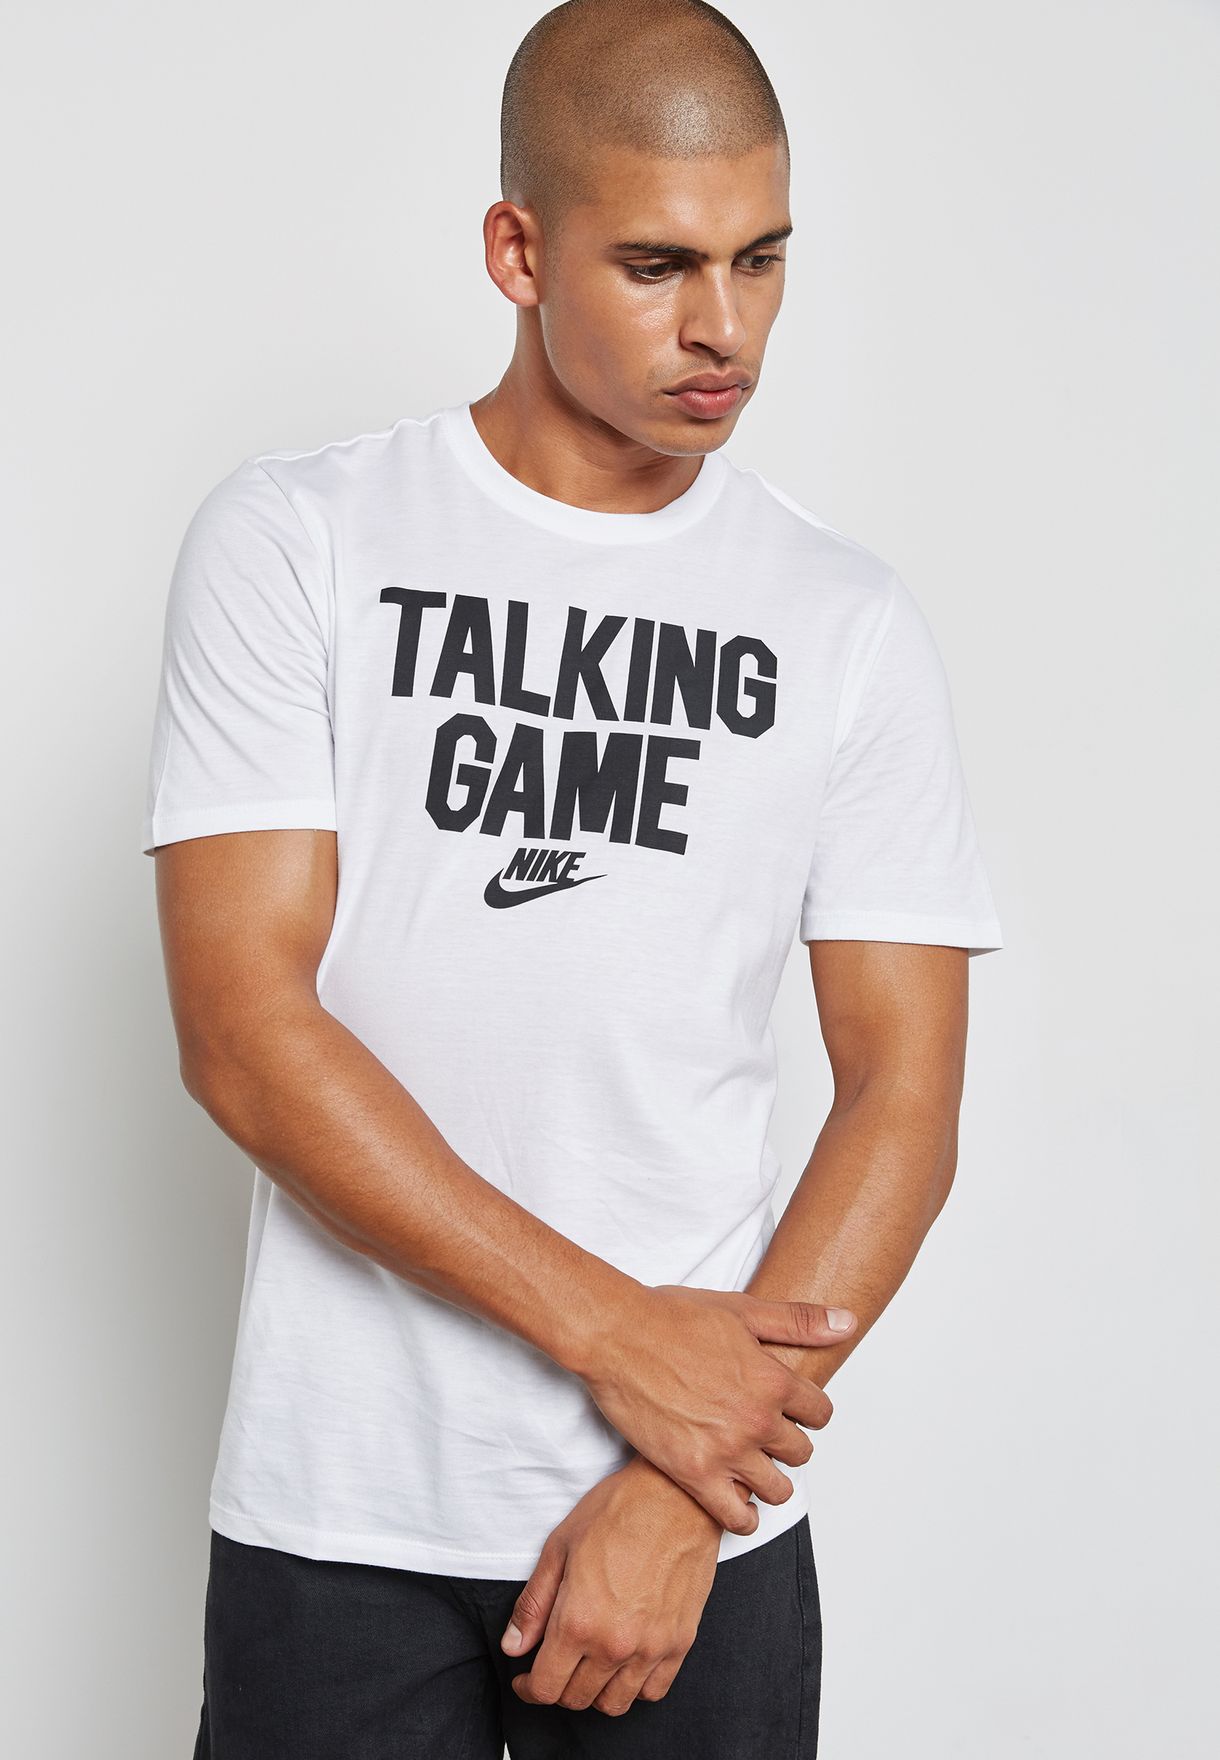 nike talking game t shirt